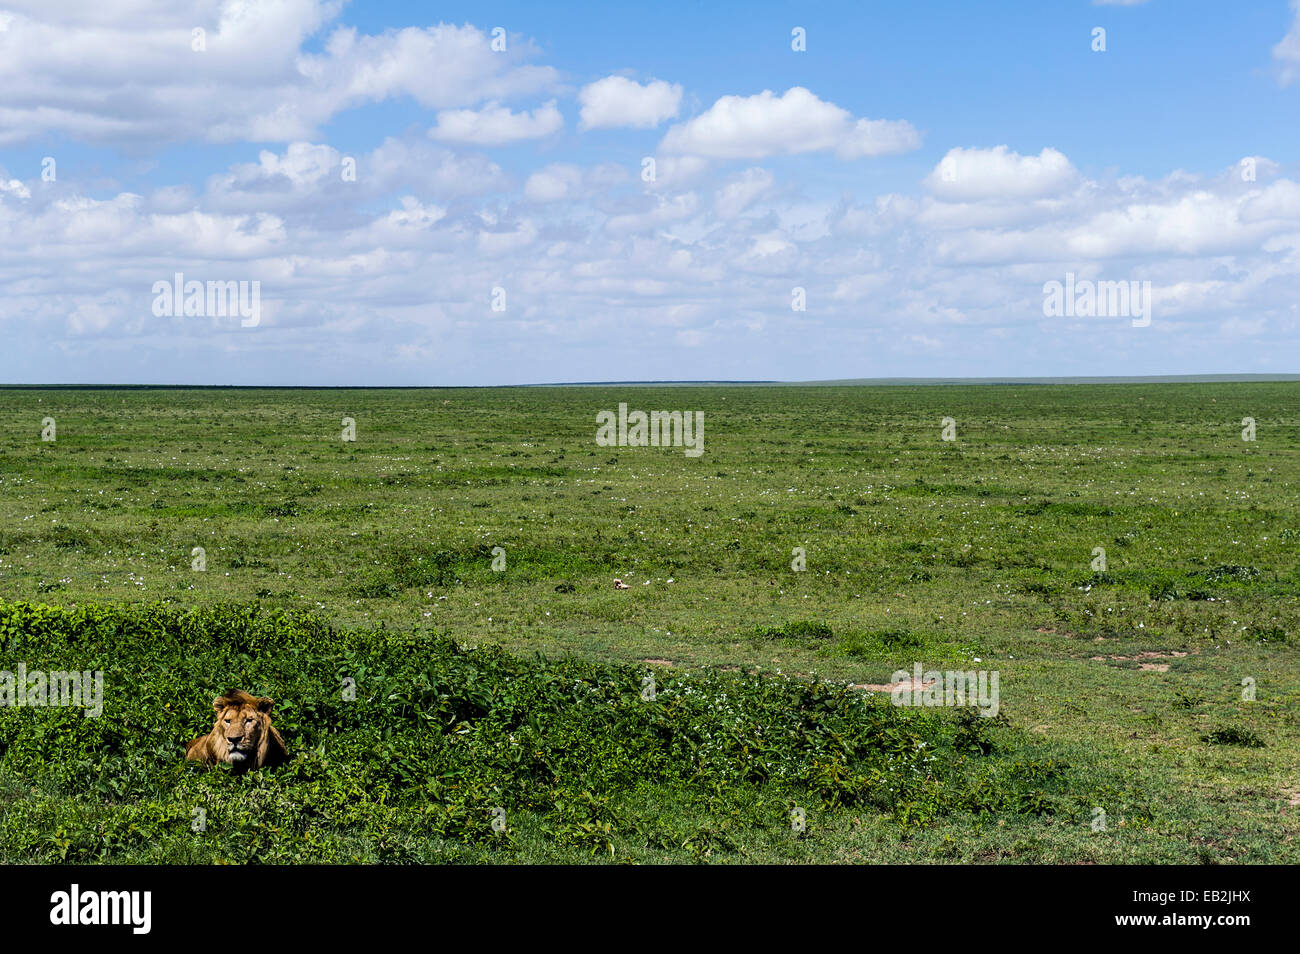 Ein männlicher afrikanischer Löwe ruht zwischen kleinen Sträuchern in der Savanne Ebene Beute warten. Stockfoto